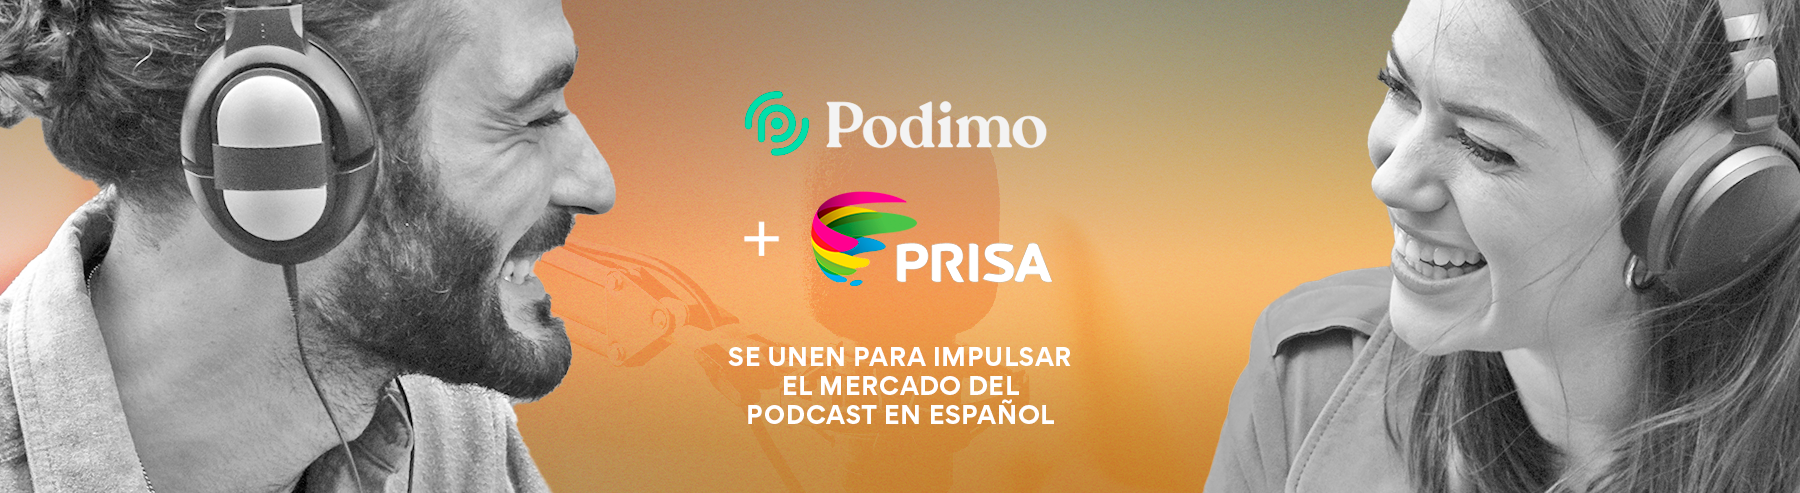 Prisa Media y Podimo unen fuerzas para impulsar el mercado del podcast